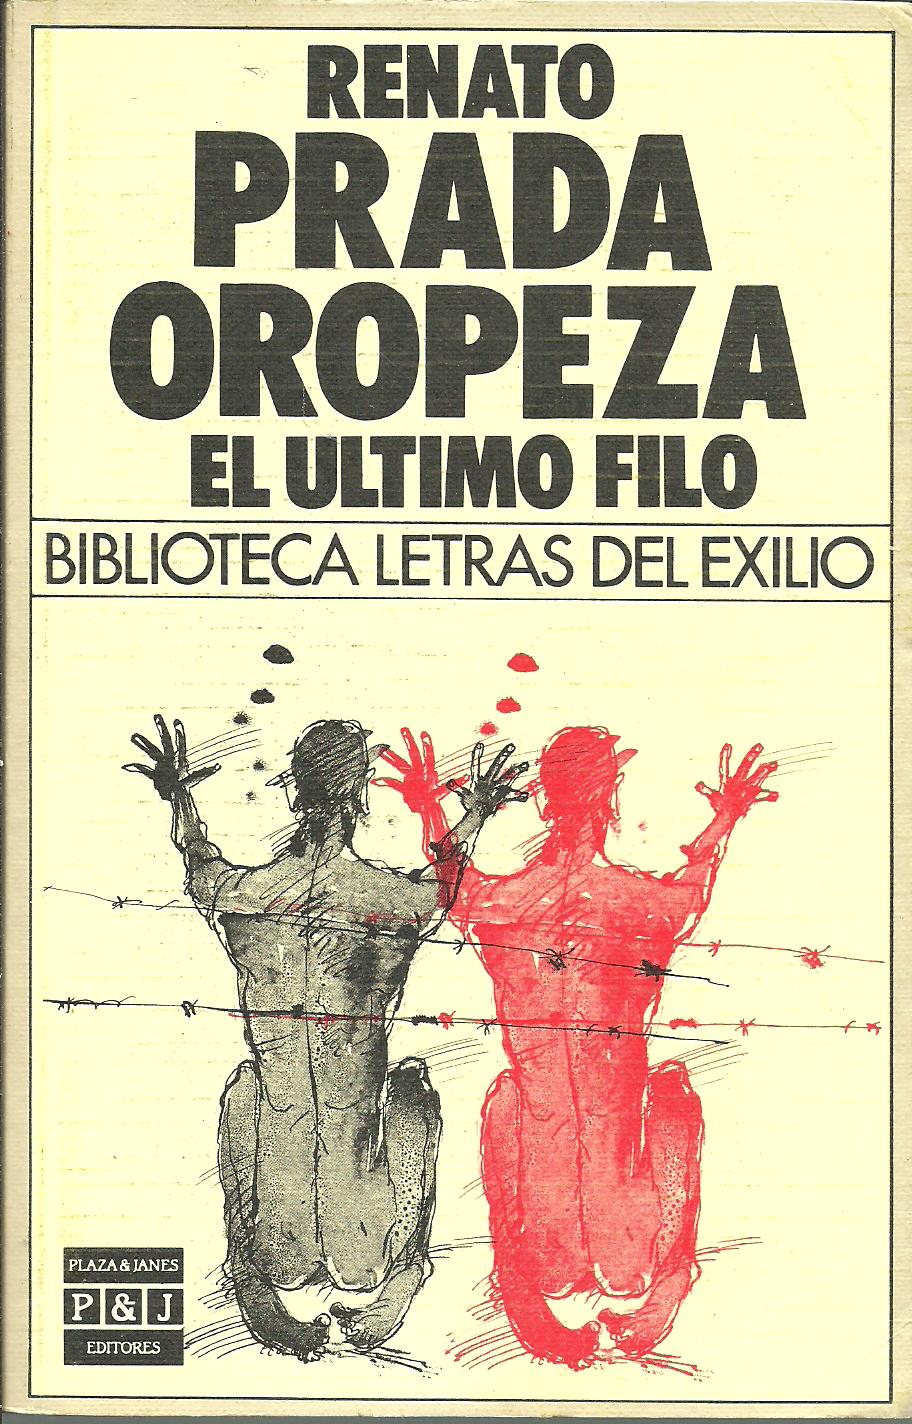 EL ULTIMO FILO by RENATO PRADA OROPEZA: Bueno BLANDA BOLSILLO (1985) |  ALZOFORA LIBROS